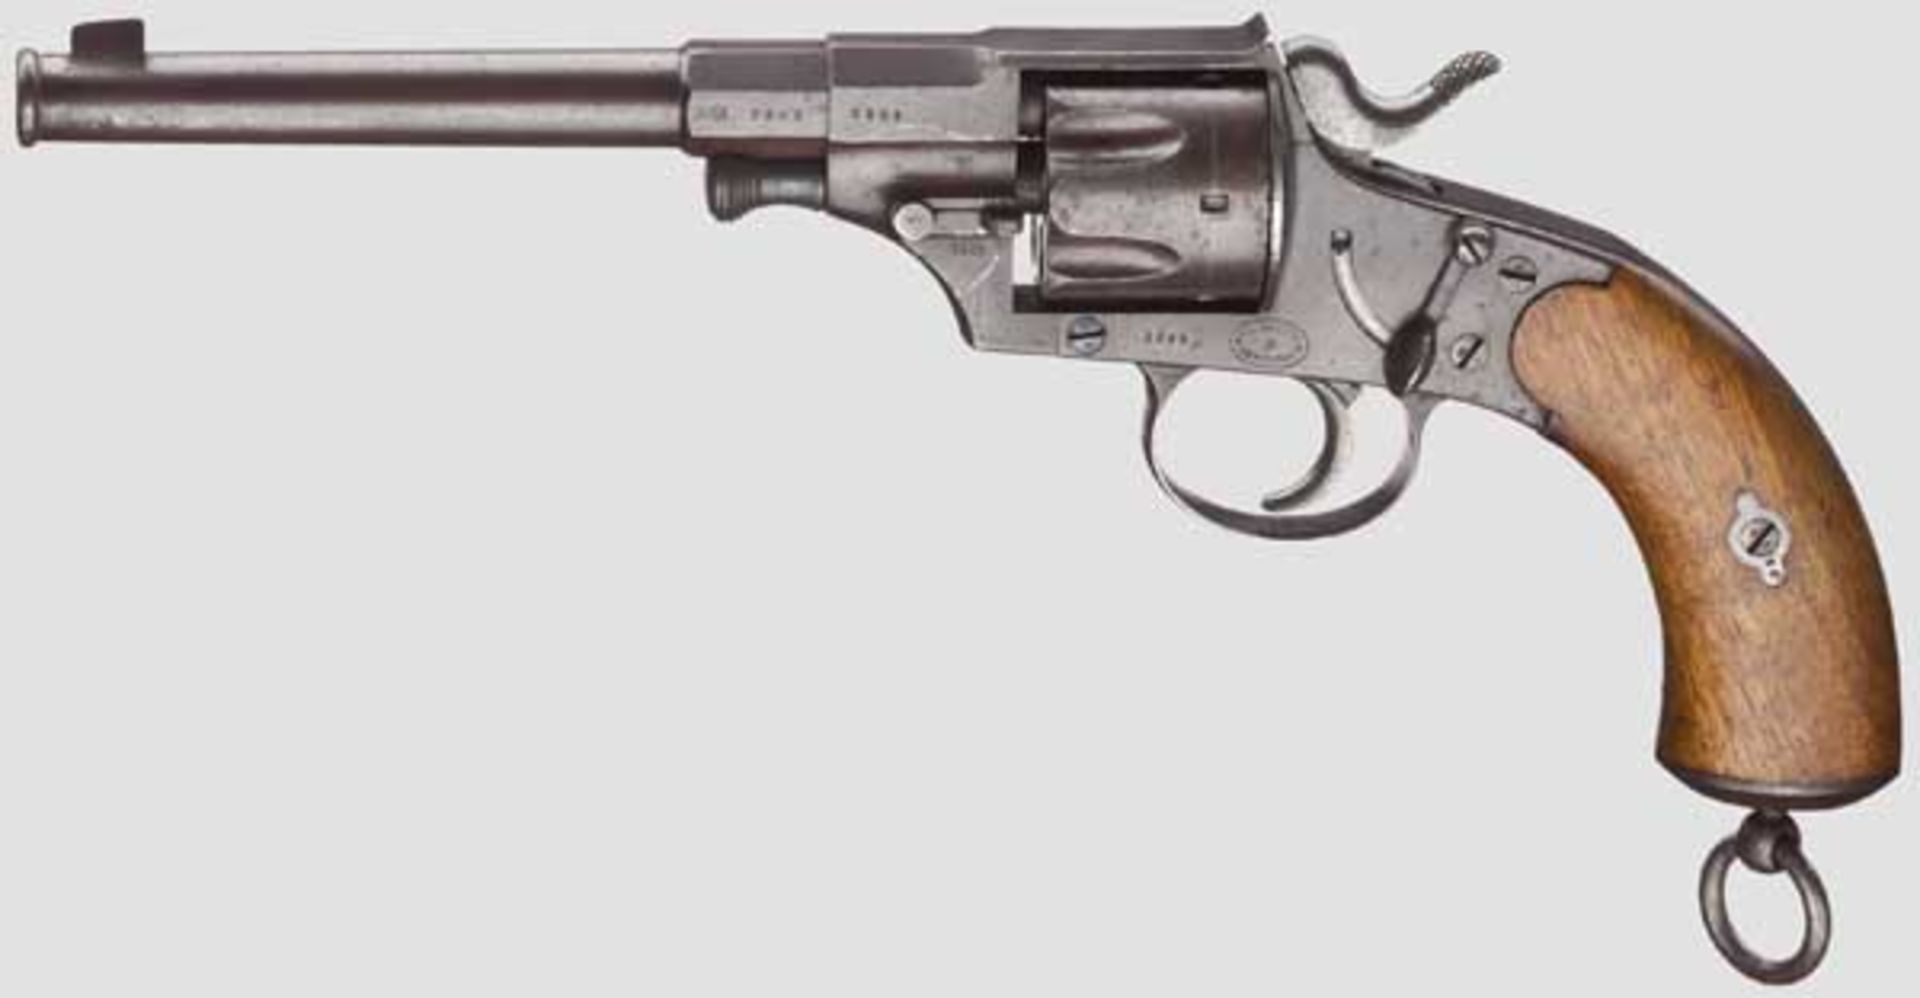 Reichsrevolver Mod. 1879, Dreyse Kal. 10,6 mm dt.Ord., Nr. 2293. Nummerngleich inkl. Schrauben. Fast